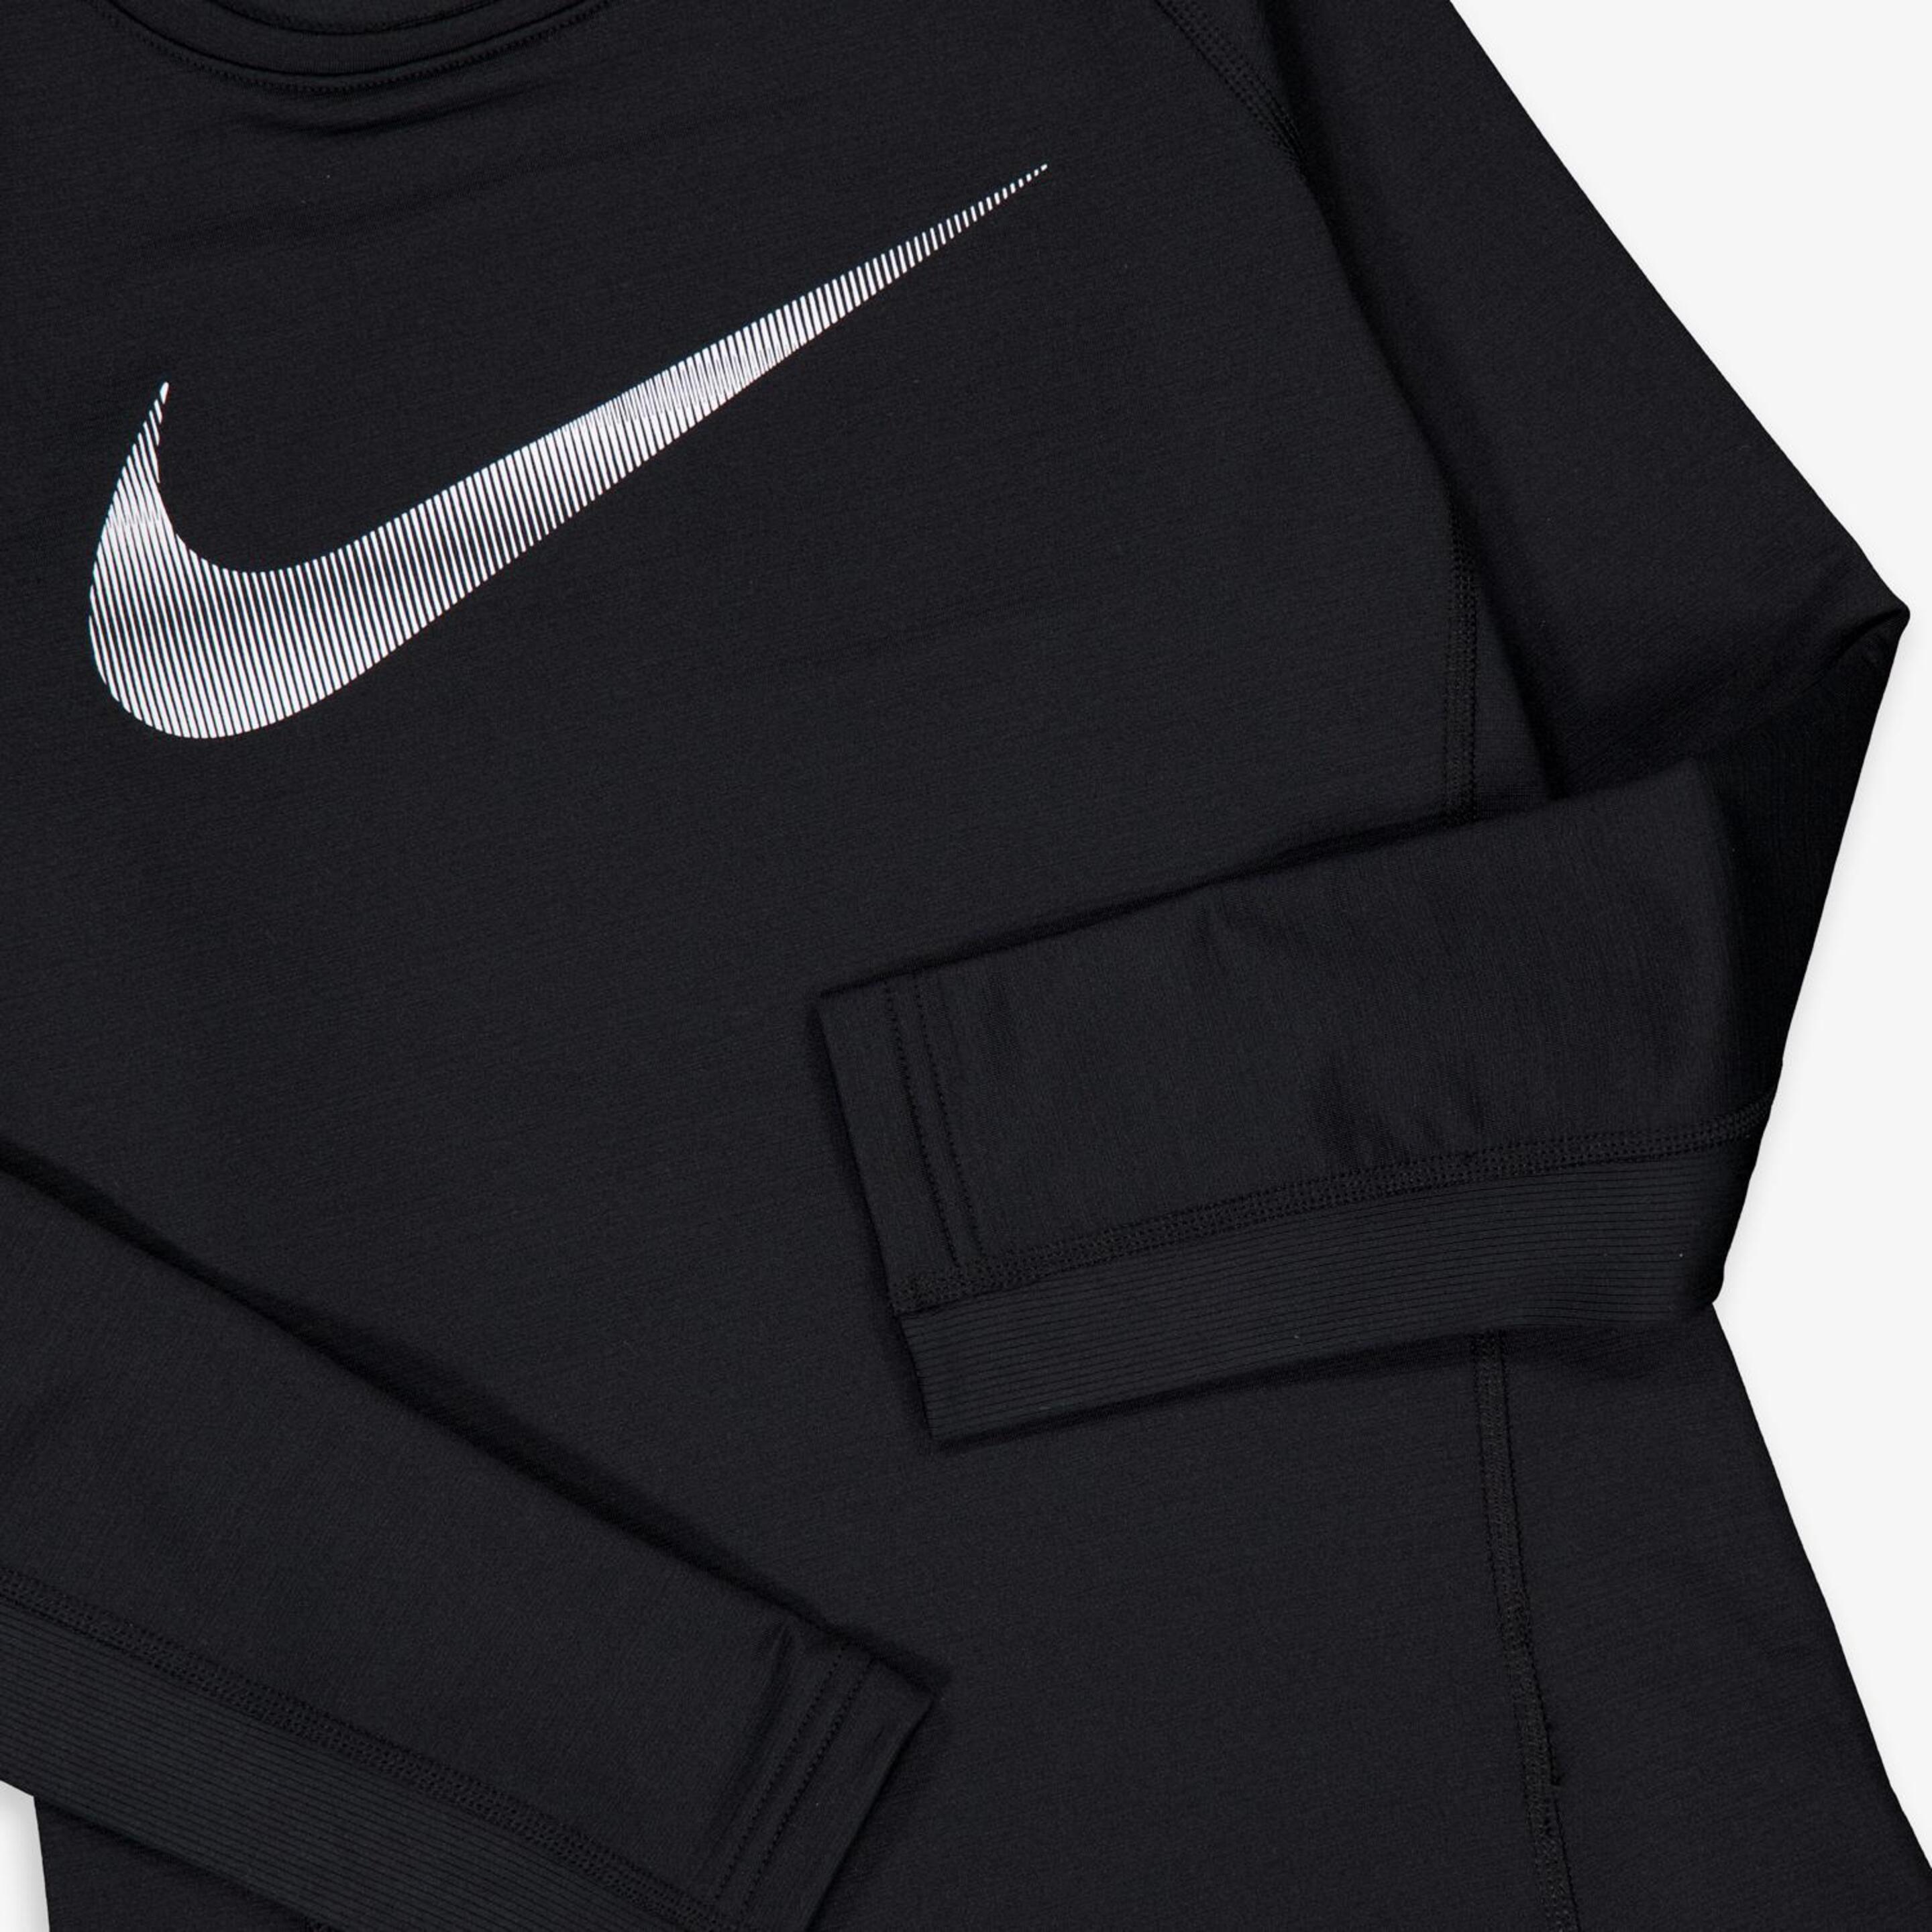 Camiseta Nike - Negro - Camiseta Running Niño